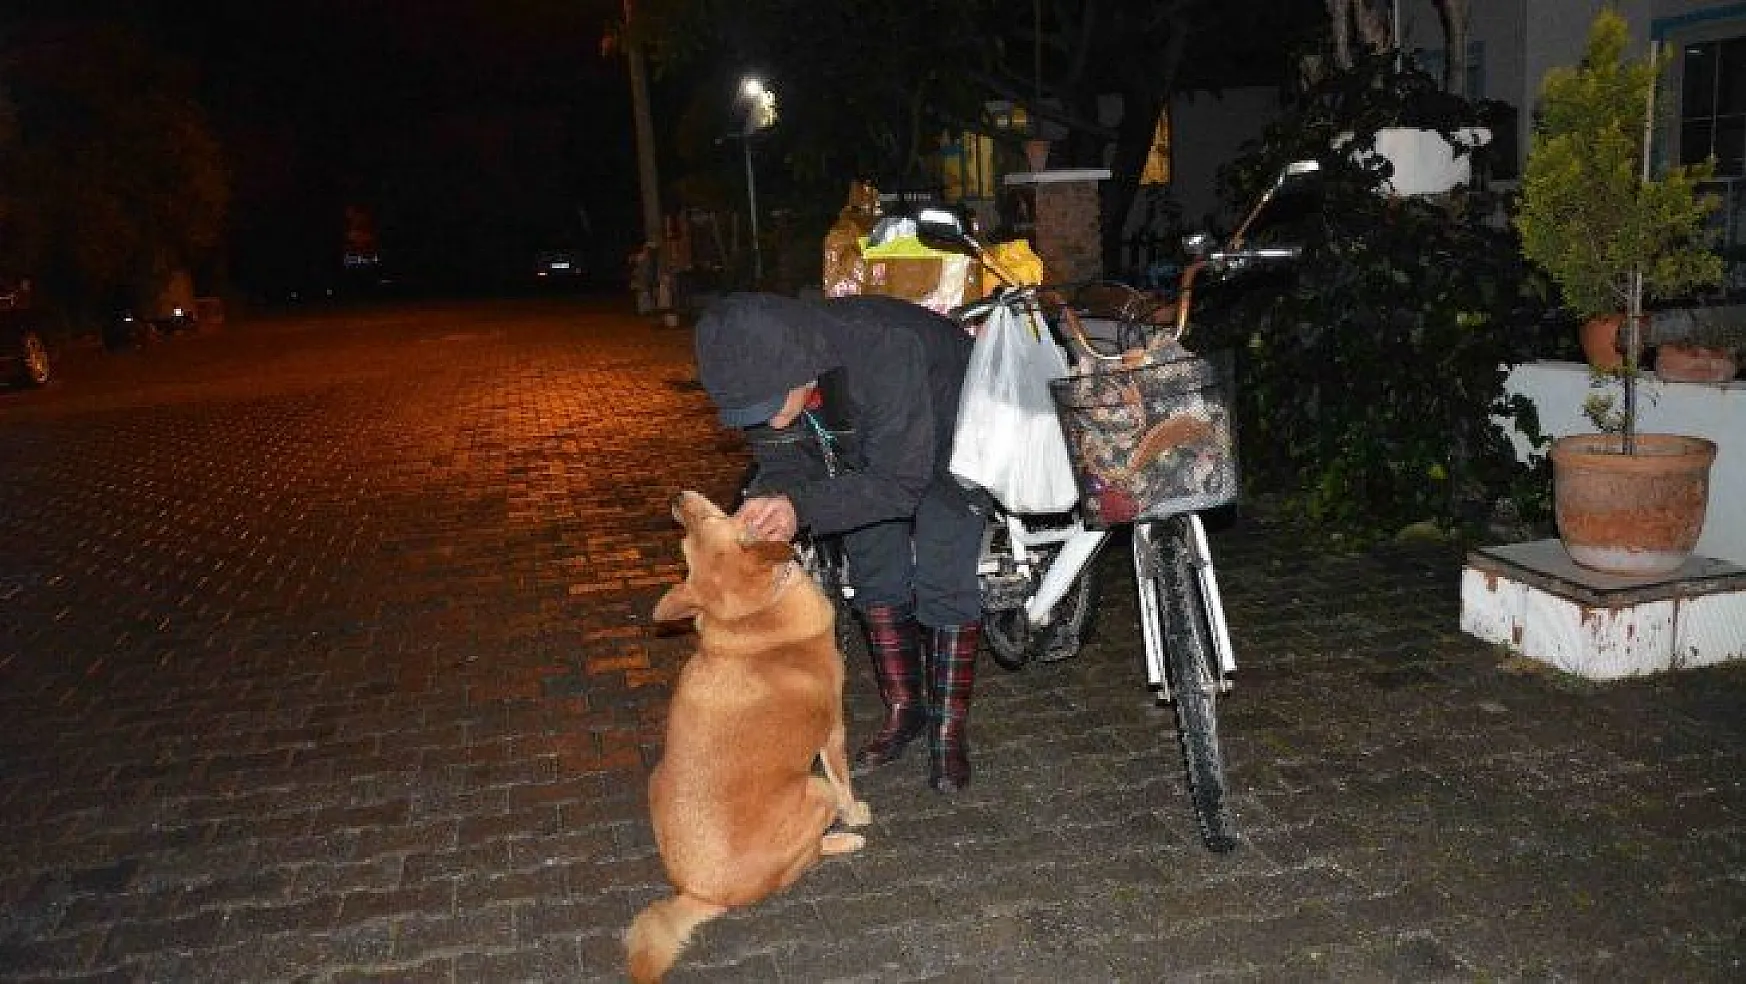 Bisikletiyle sokak sokak dolaşıp kedi ve köpekleri besliyor